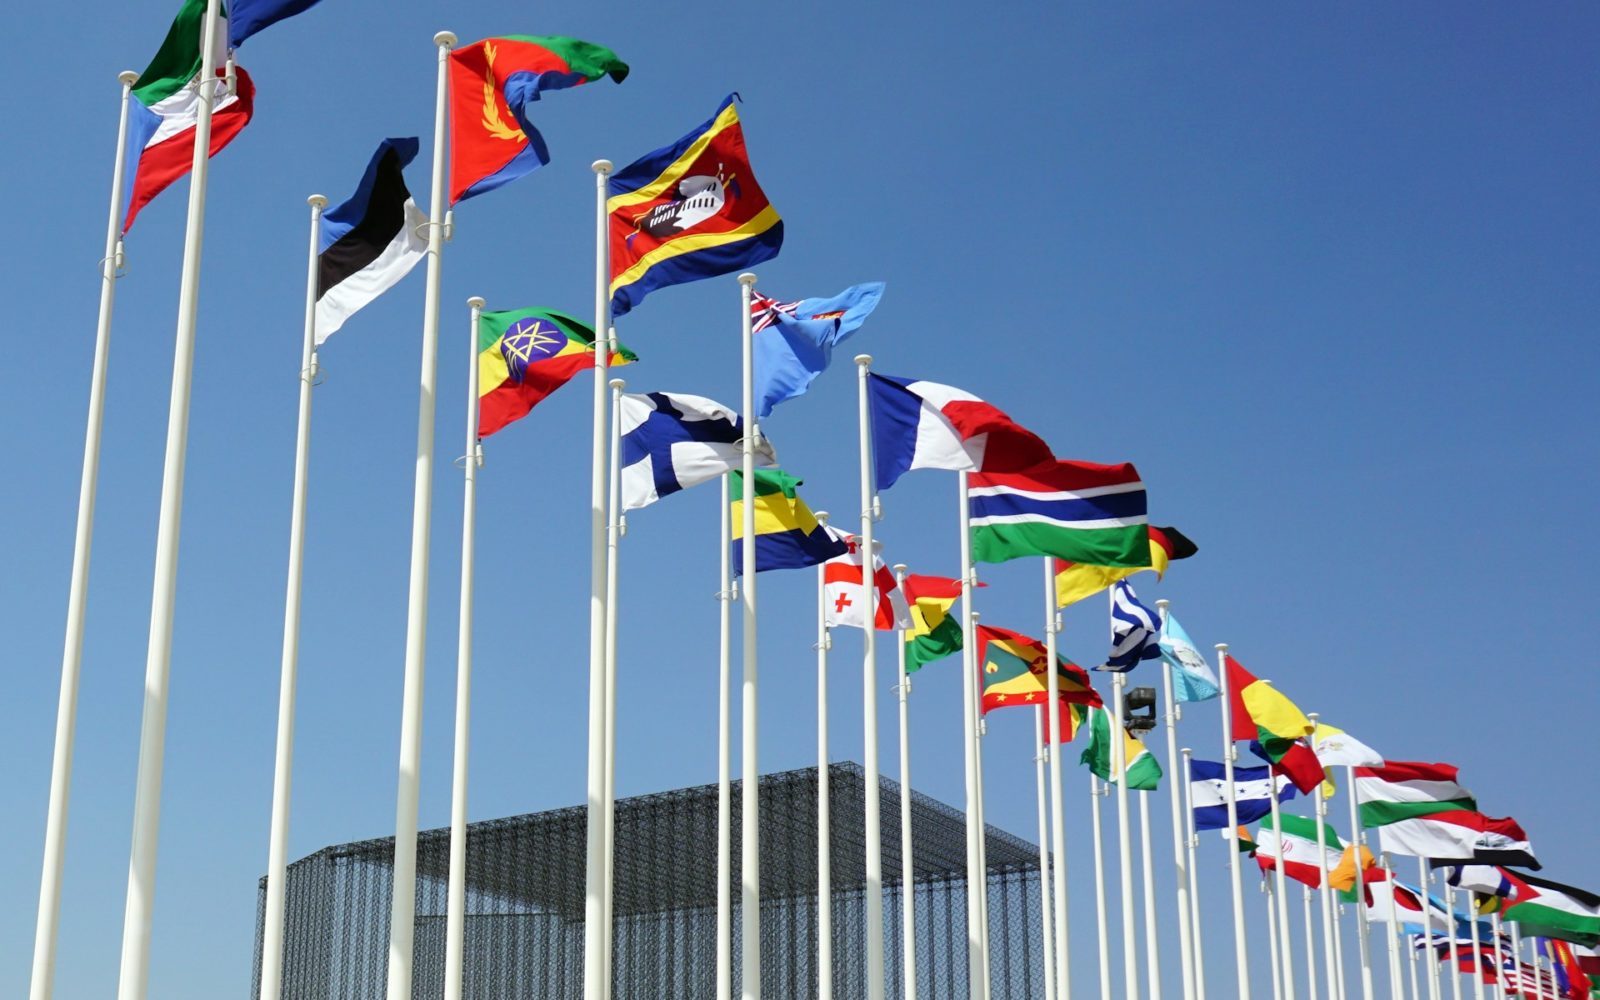 row of world flags against a blue sky